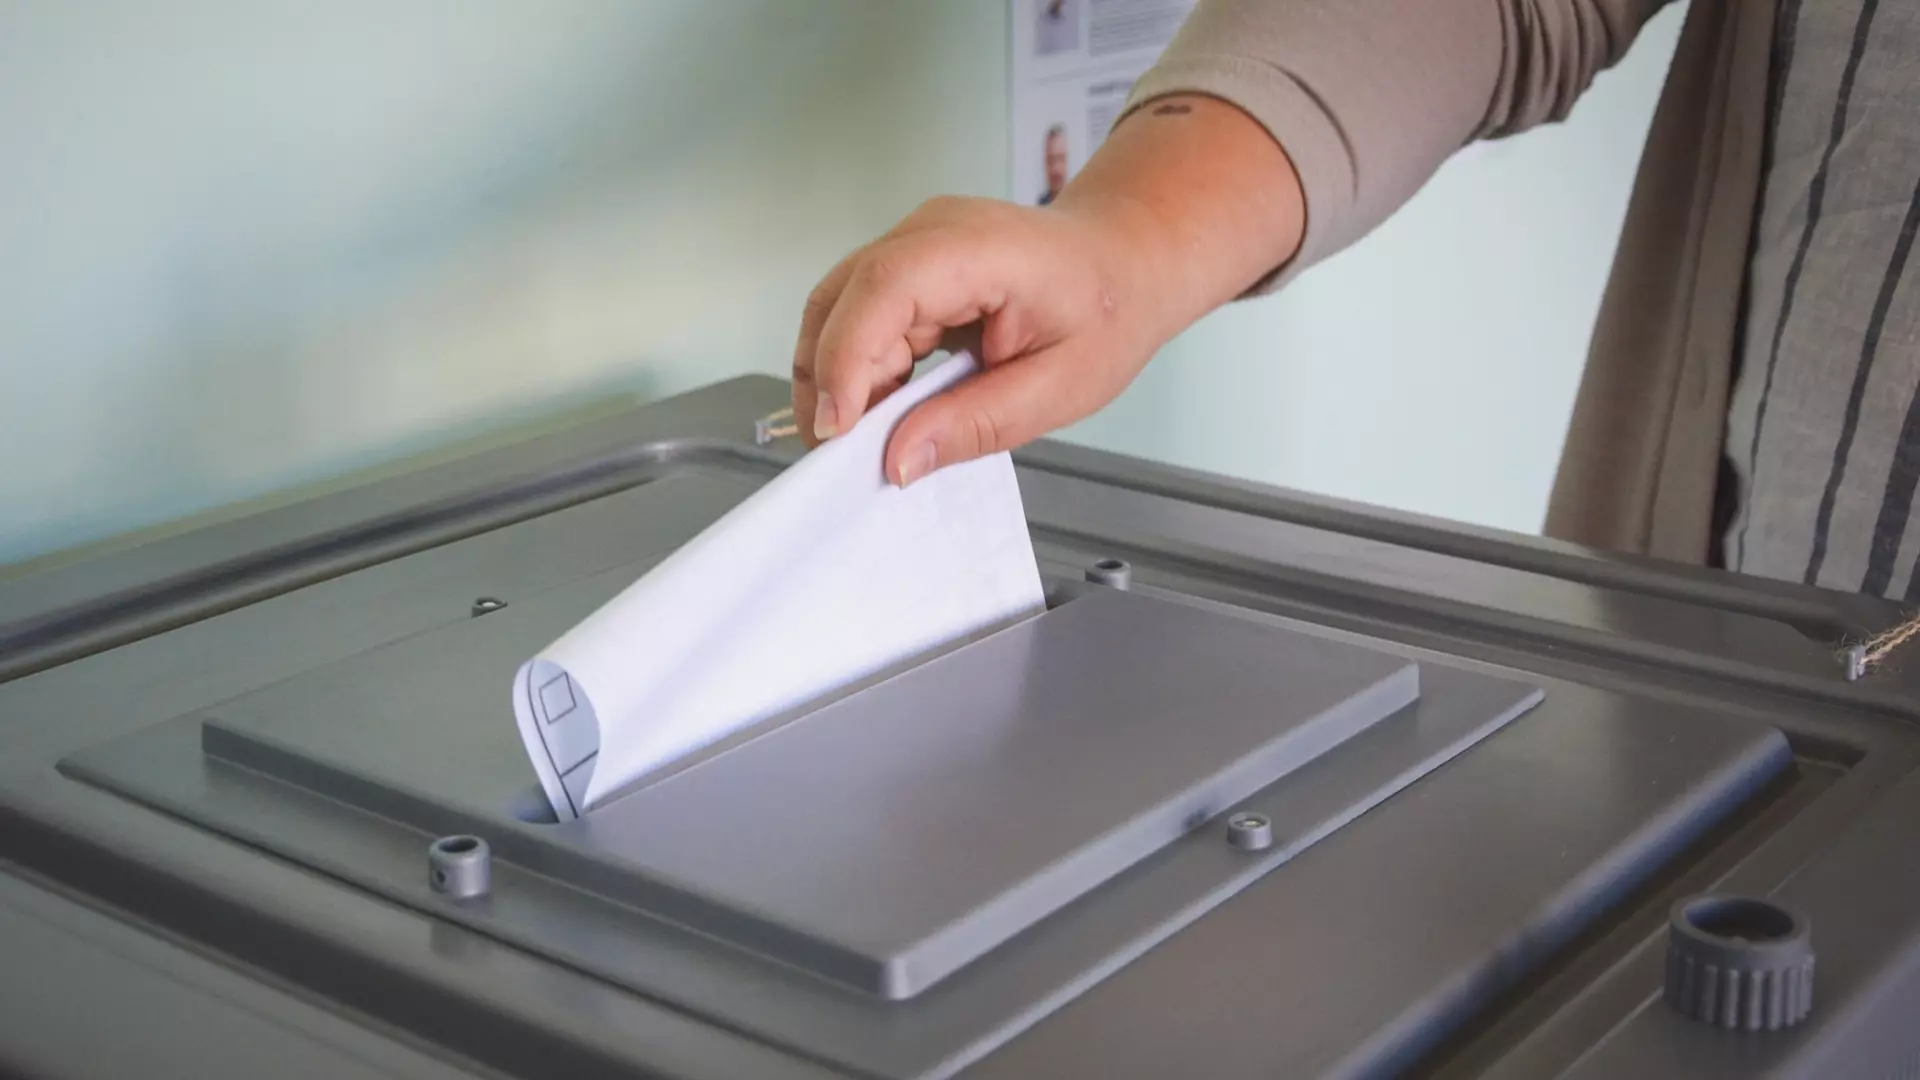 Общая явка на выборы в Нижегородской области превысила 72%